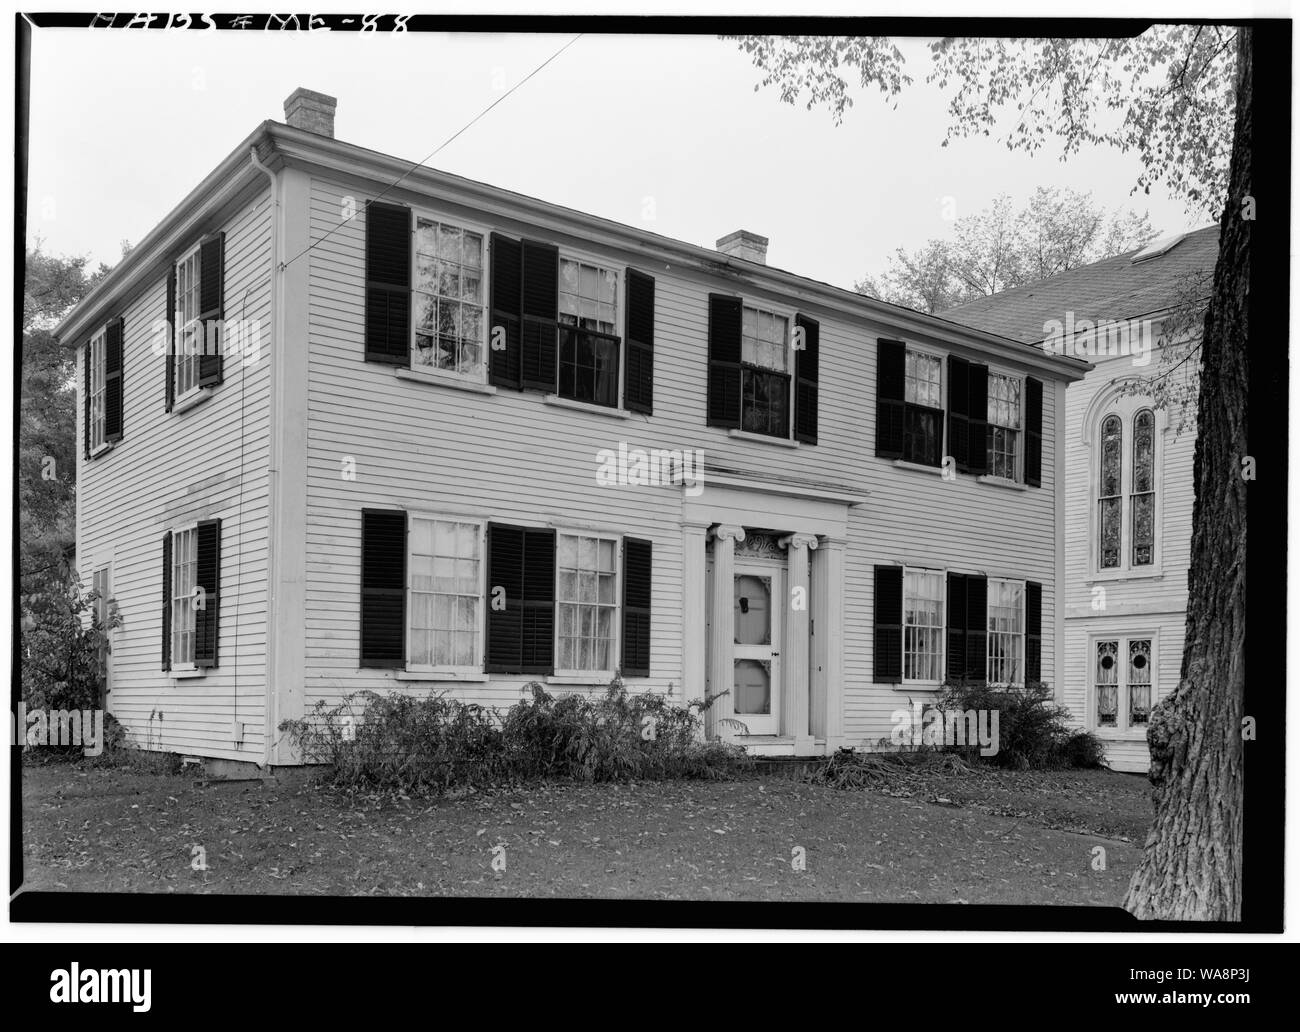 Kapitän Cushing House; Englisch: Vor dem Kapitän der Cushing'schen Haus, am 31 Chestnut Street in Camden, eine Stadt im Knox County, Maine, USA. 1799 erbaut, ist es Teil der Chestnut Street Historic District, einem historischen Viertel, im National Register der Historischen Stätten aufgeführt ist. Stockfoto